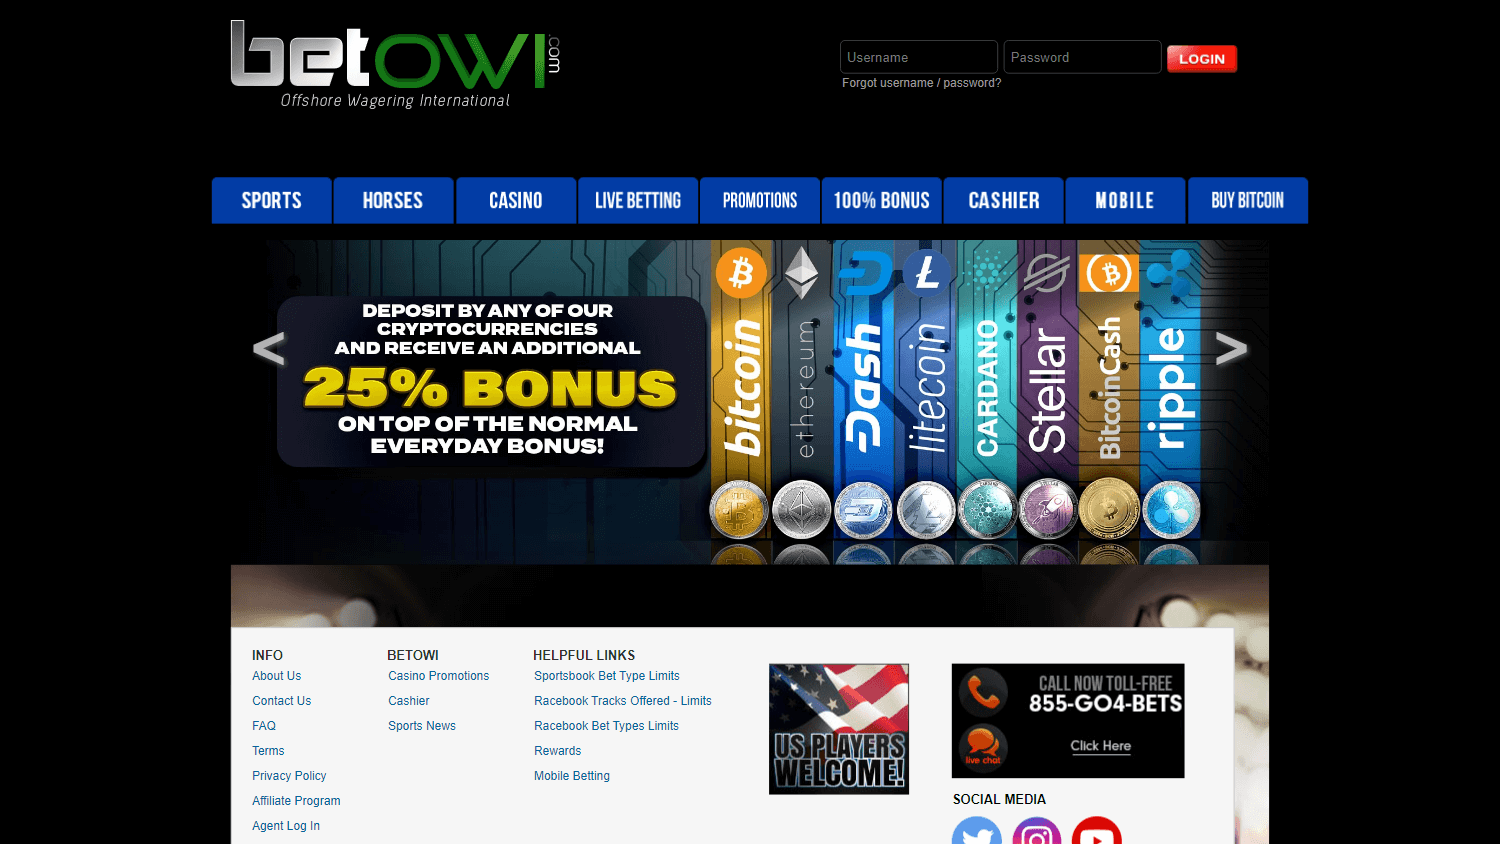 betowi_casino_homepage_desktop